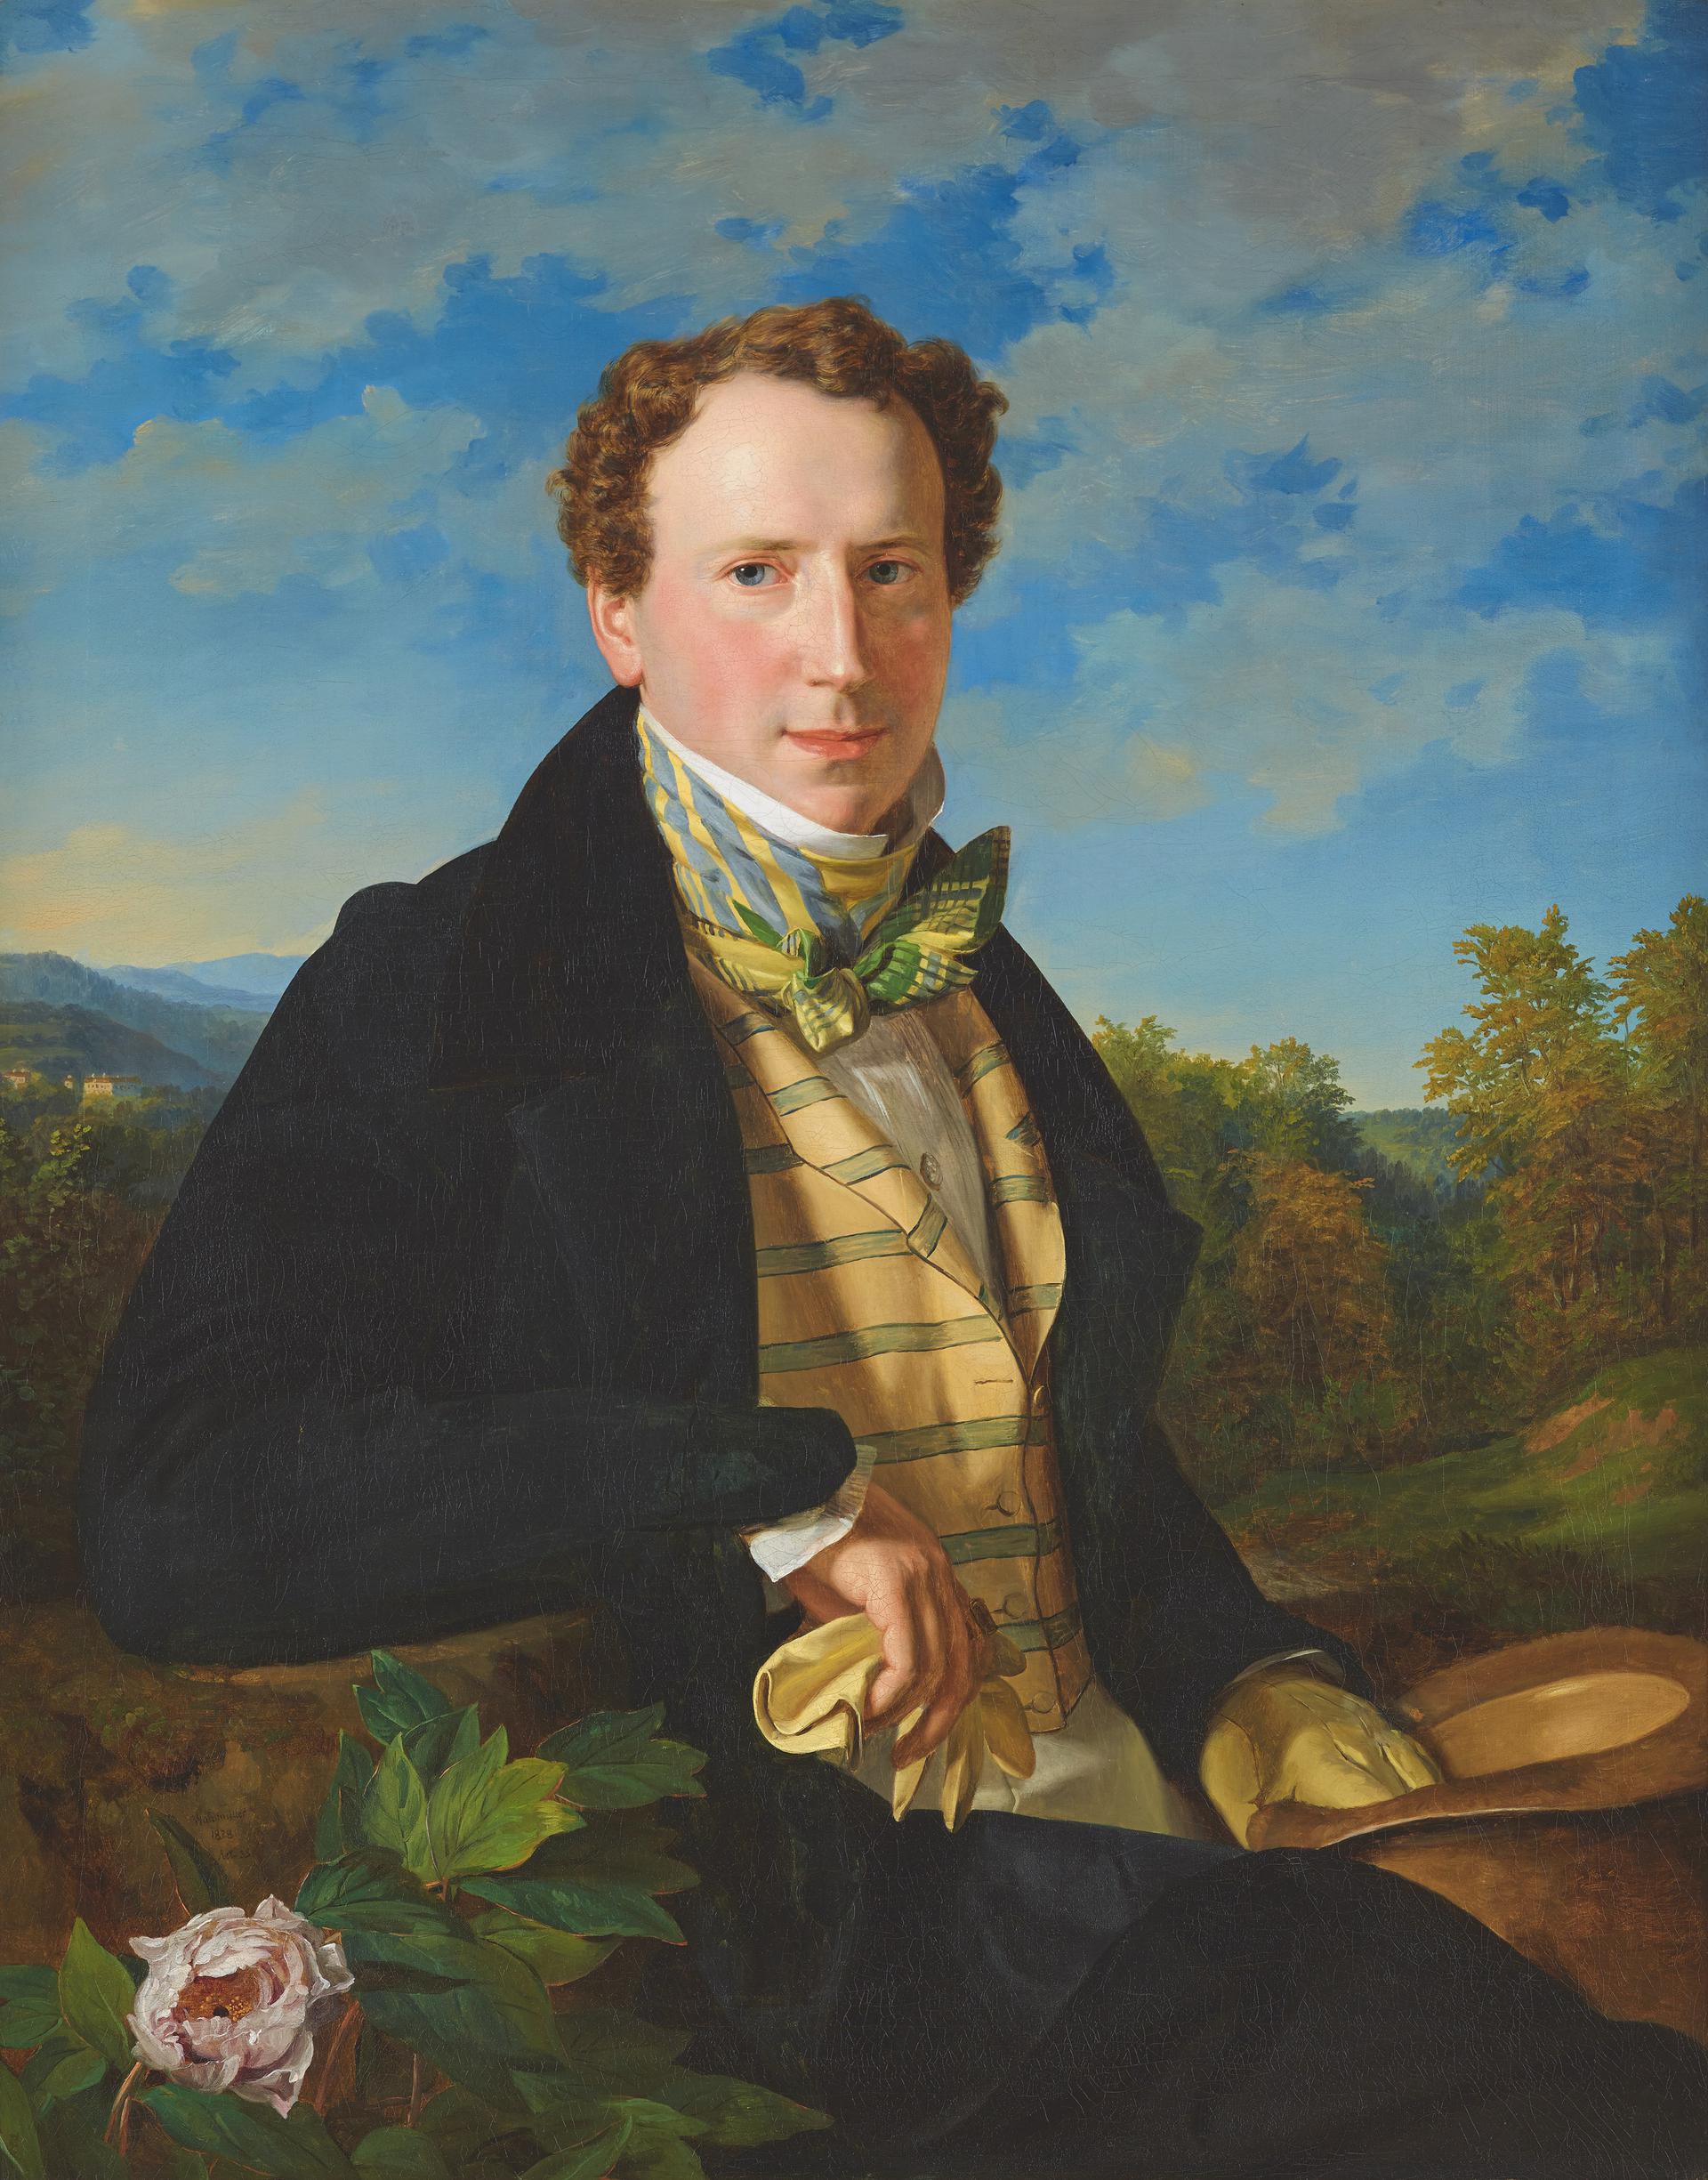 Ferdinand Georg Waldmüller, Autoritratto giovanile, 1828, olio su tela, Belvedere, Vienna © Belvedere, Vienna